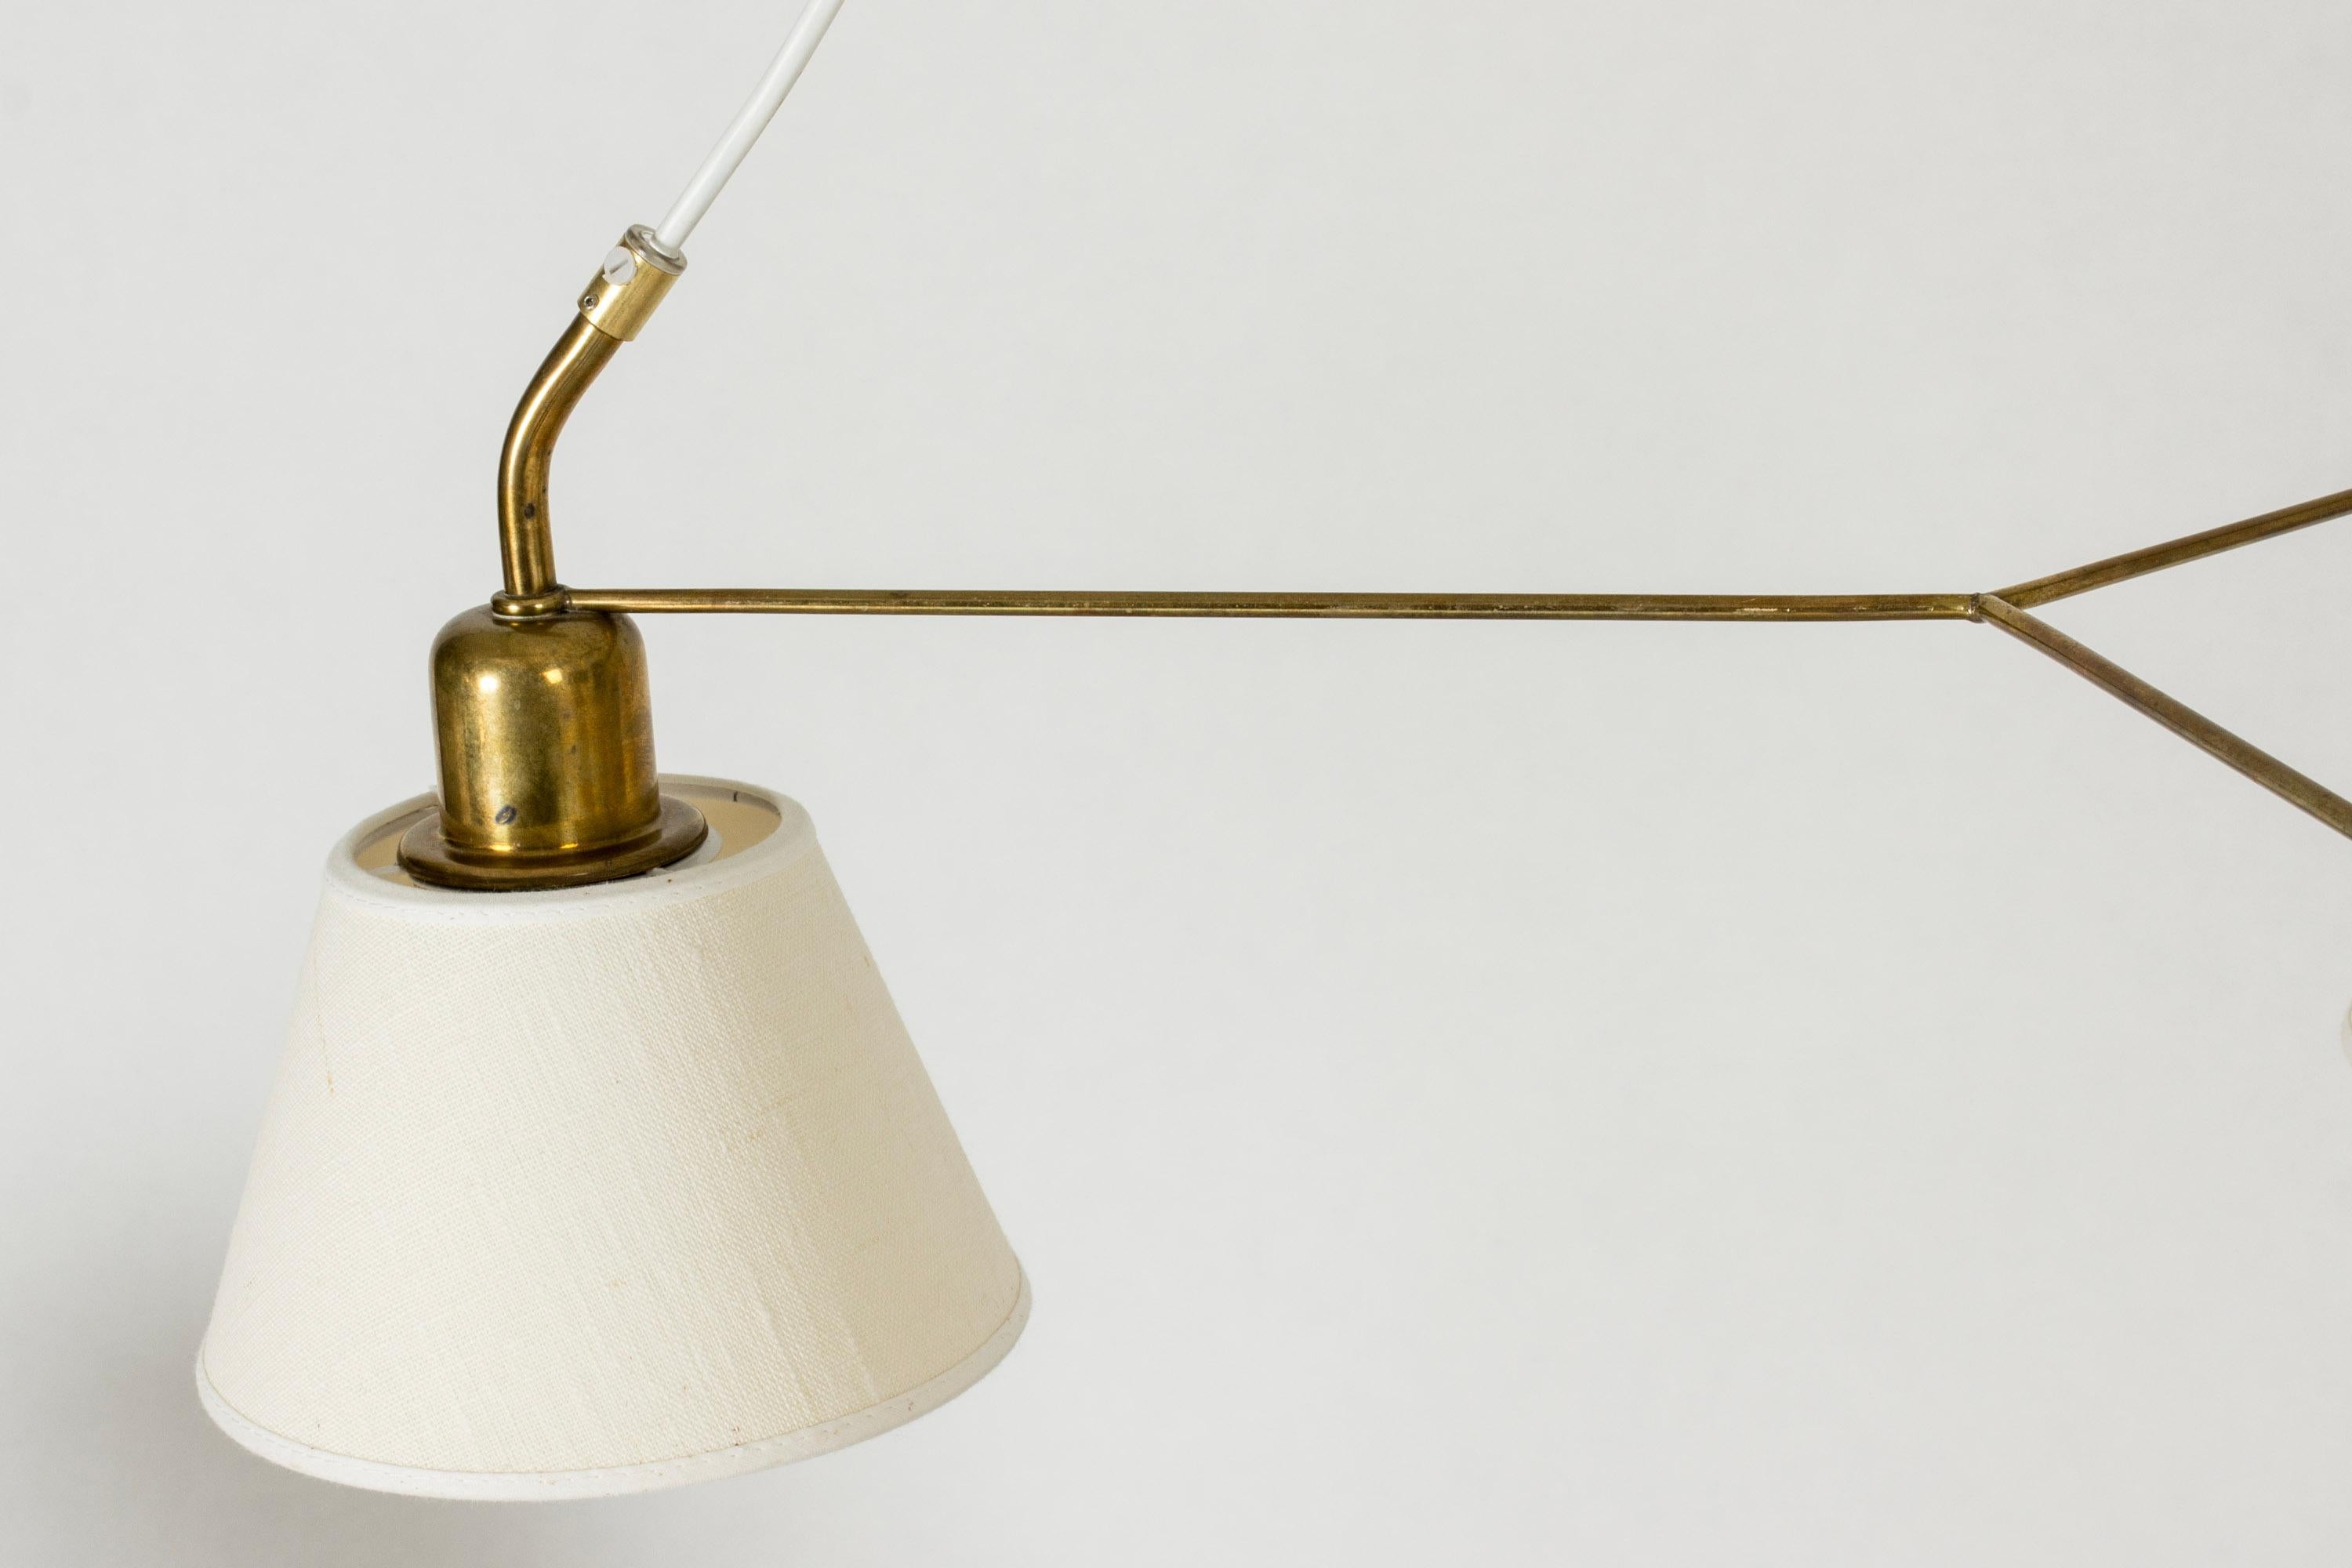 Brass Midcentury Modern Pendant Light by Josef Frank, Svenskt Tenn, Sweden, 1950s For Sale